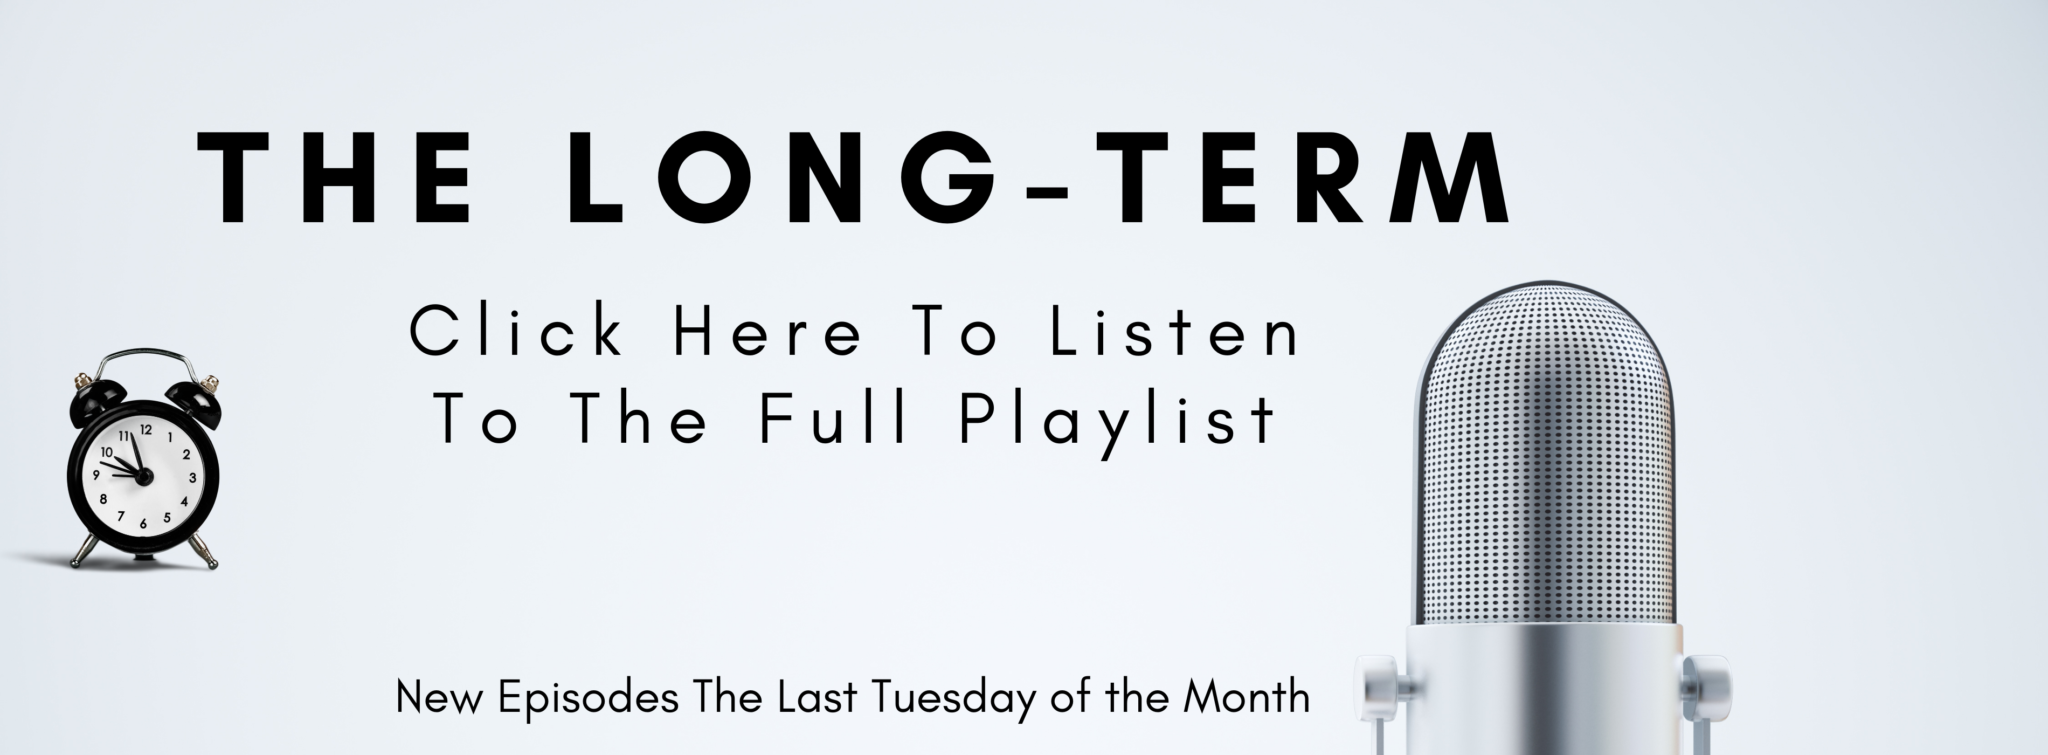 The-Long-Term-Playlist-2048x755